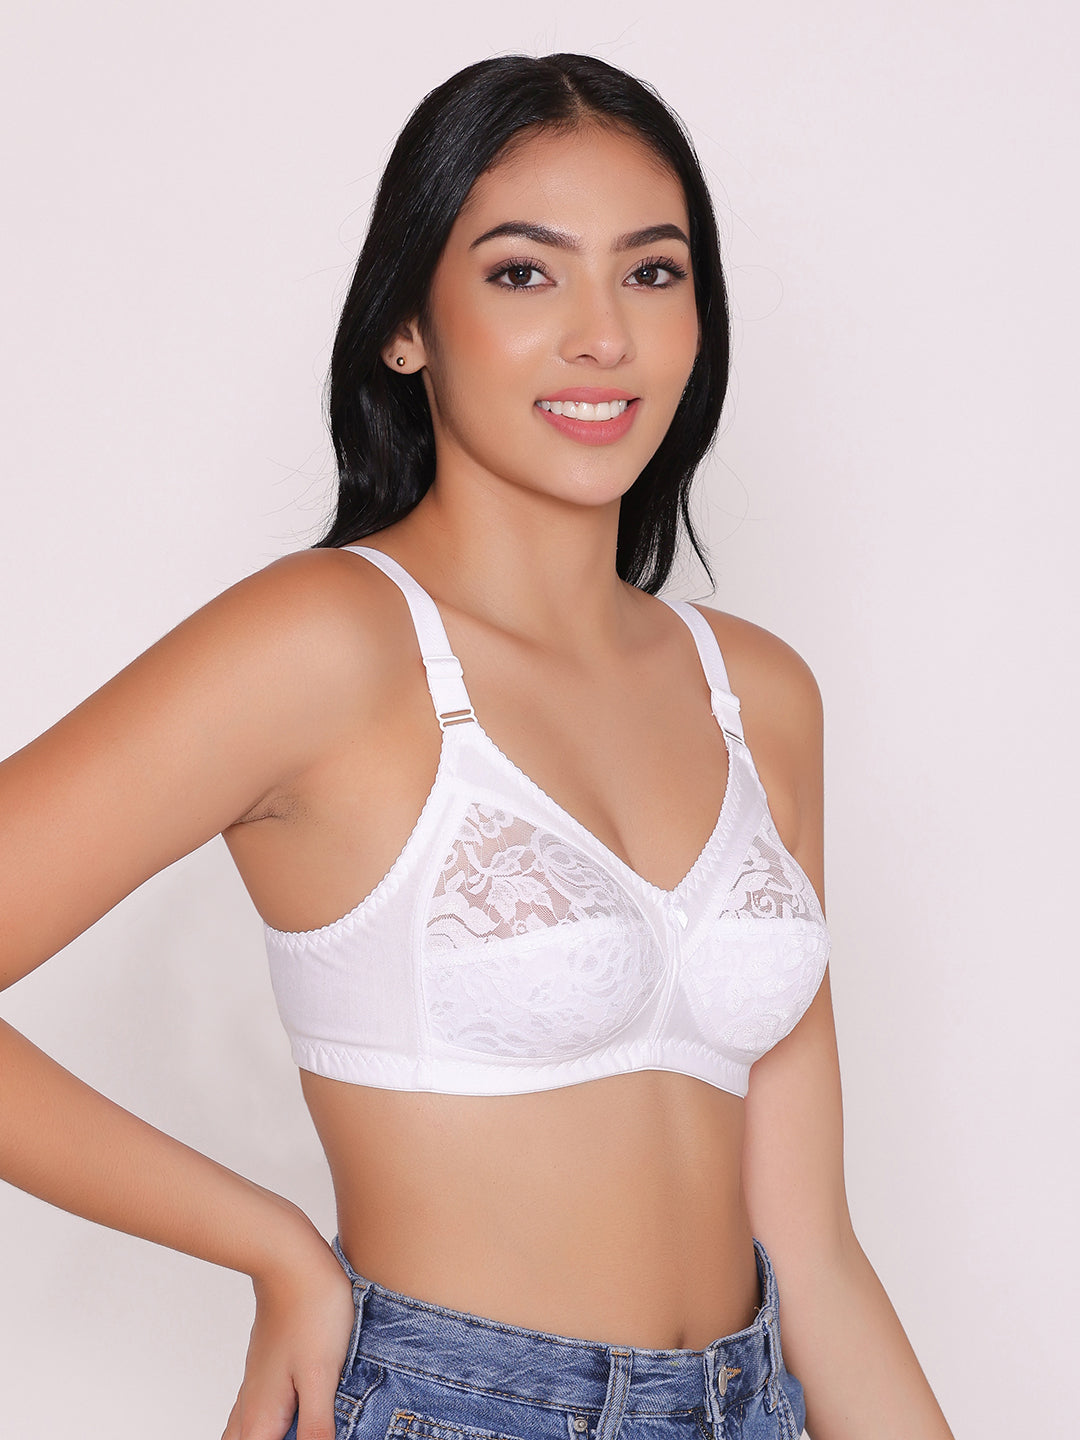 Buy Full Coverage bra, Ladies Cotton Bra Online in India at Inkurv – INKURV